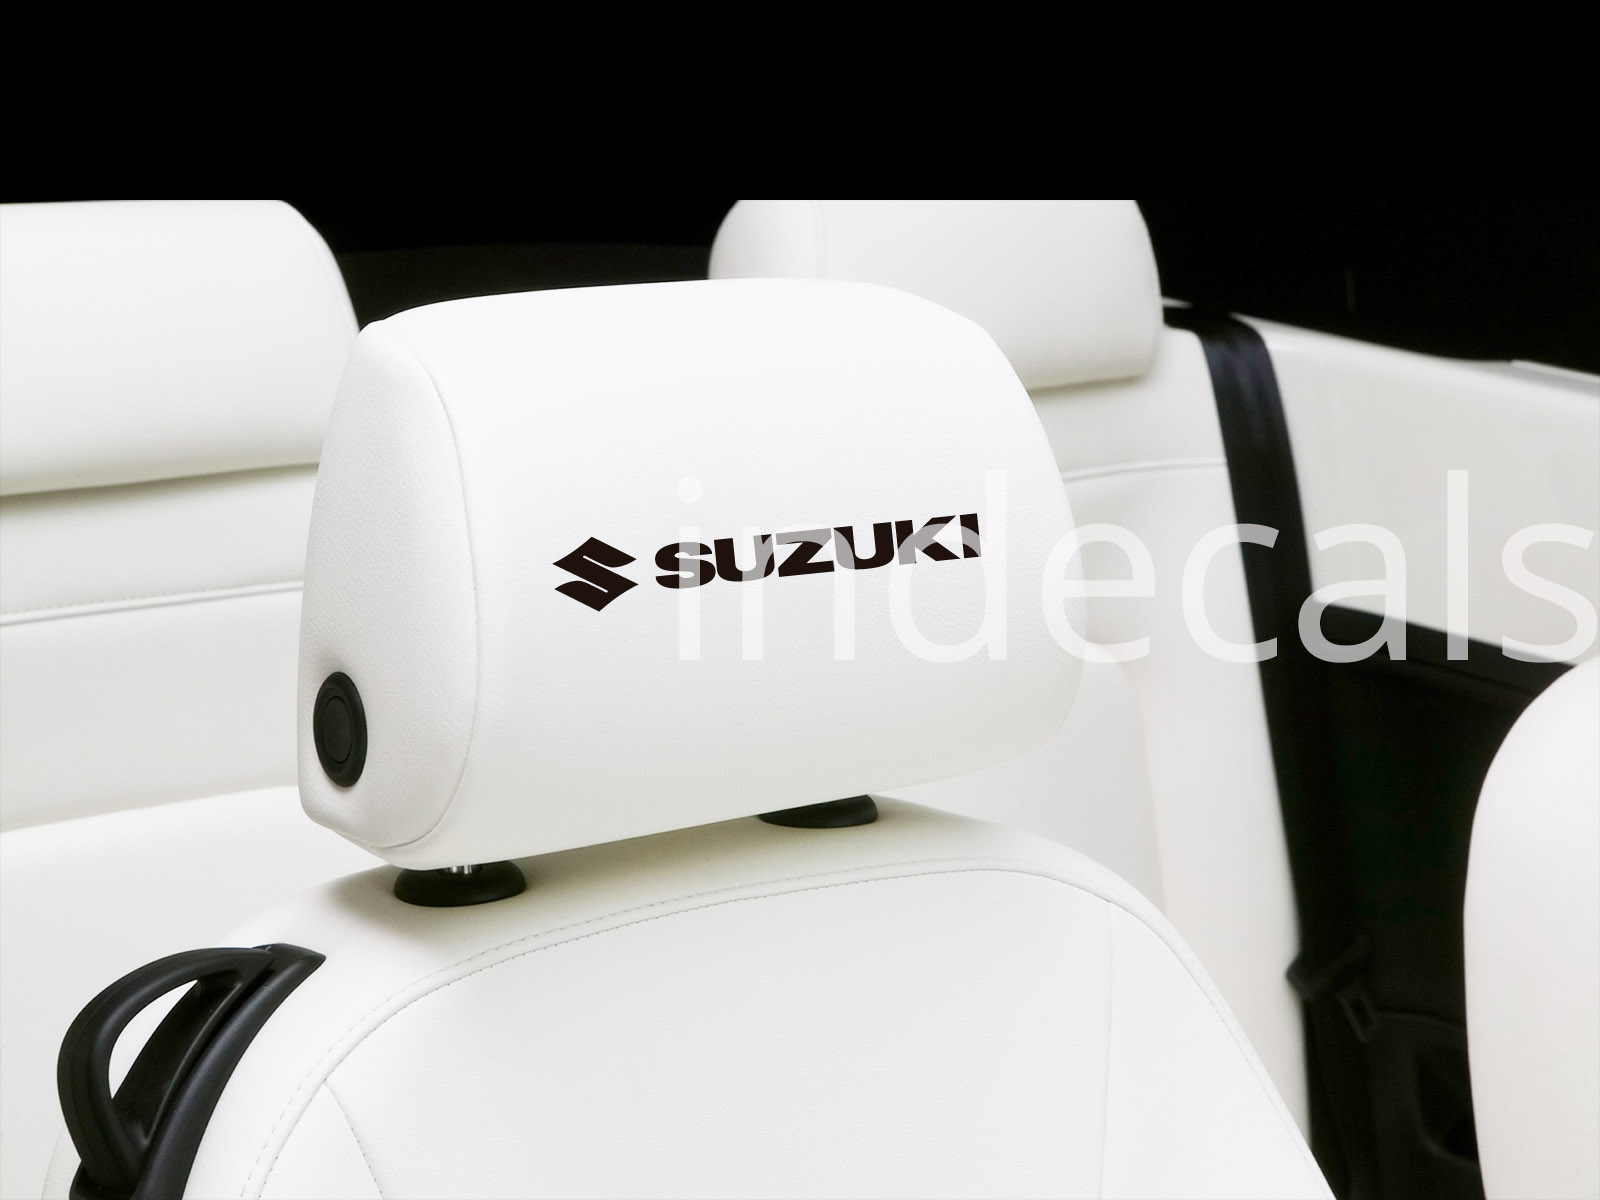 6 x Suzuki Stickers for Headrests - Black